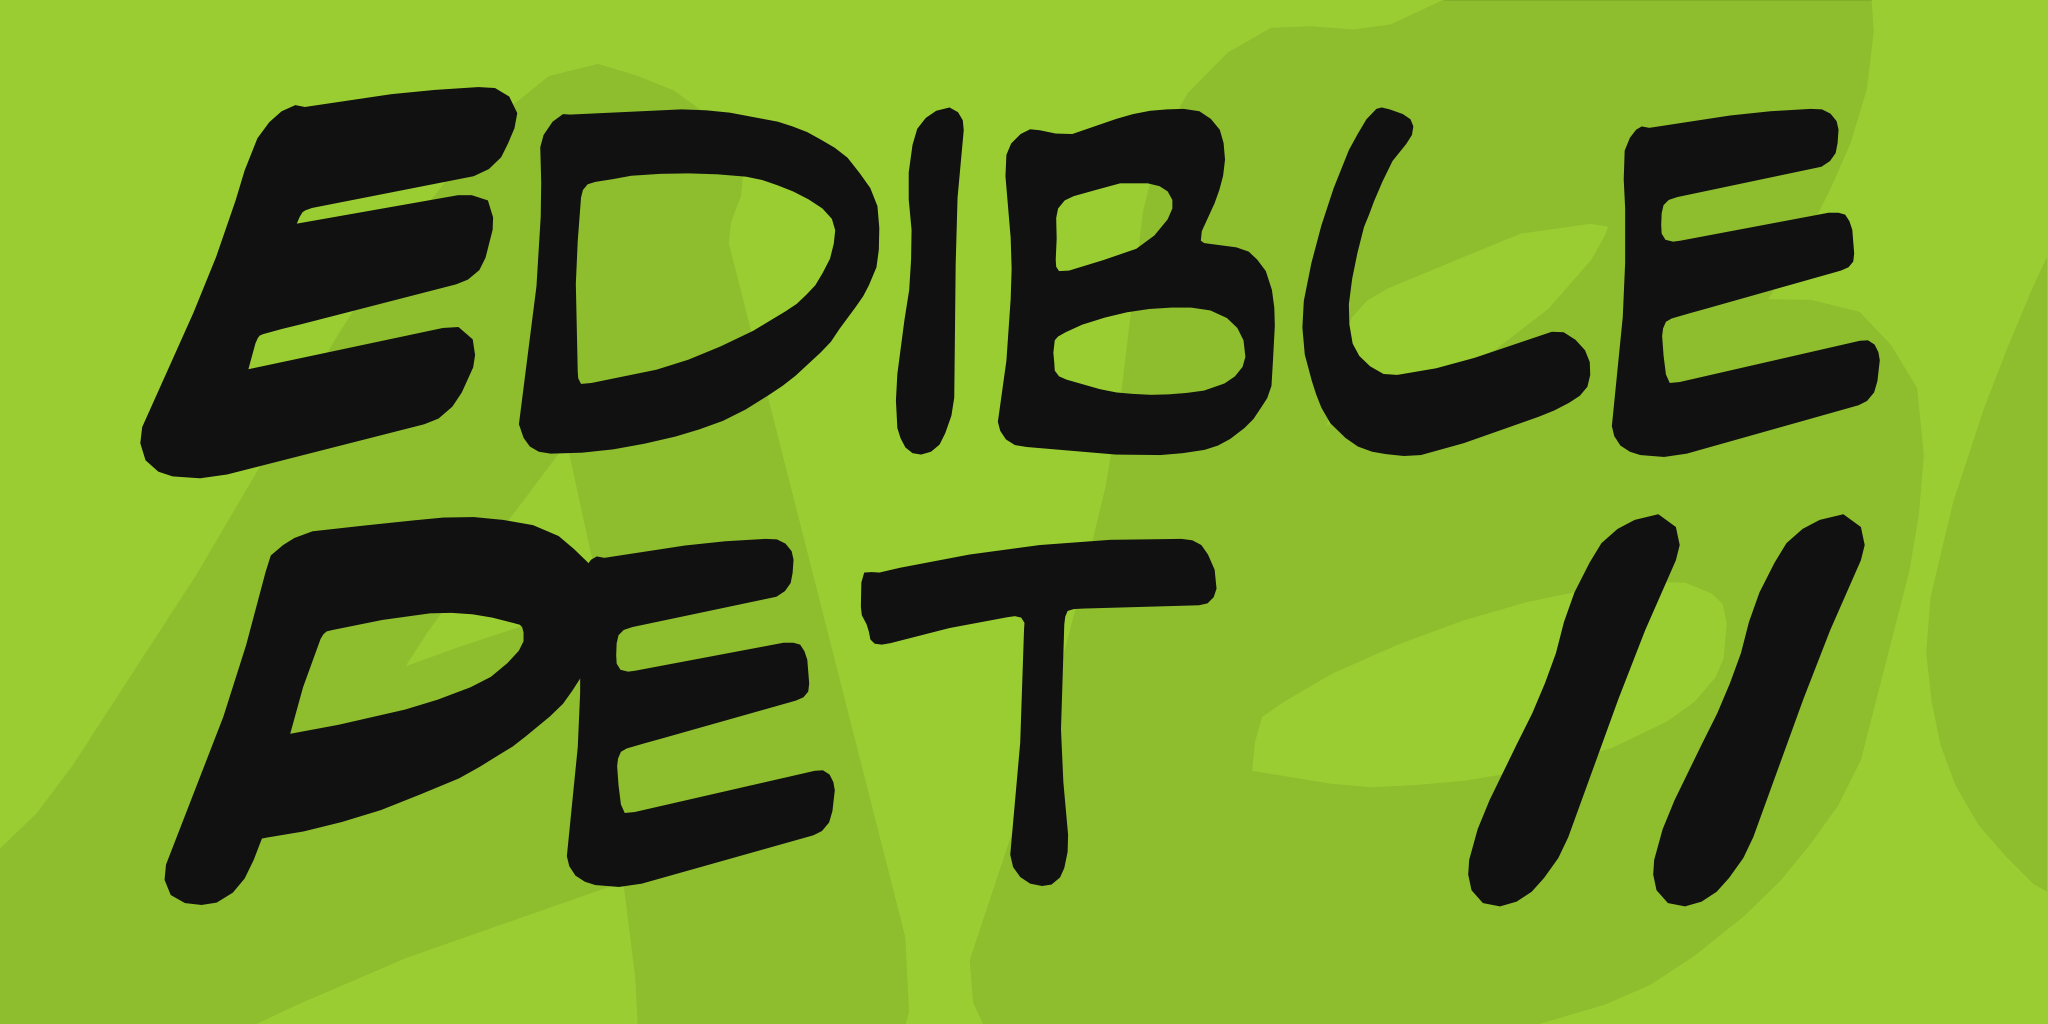 Edible Pet II